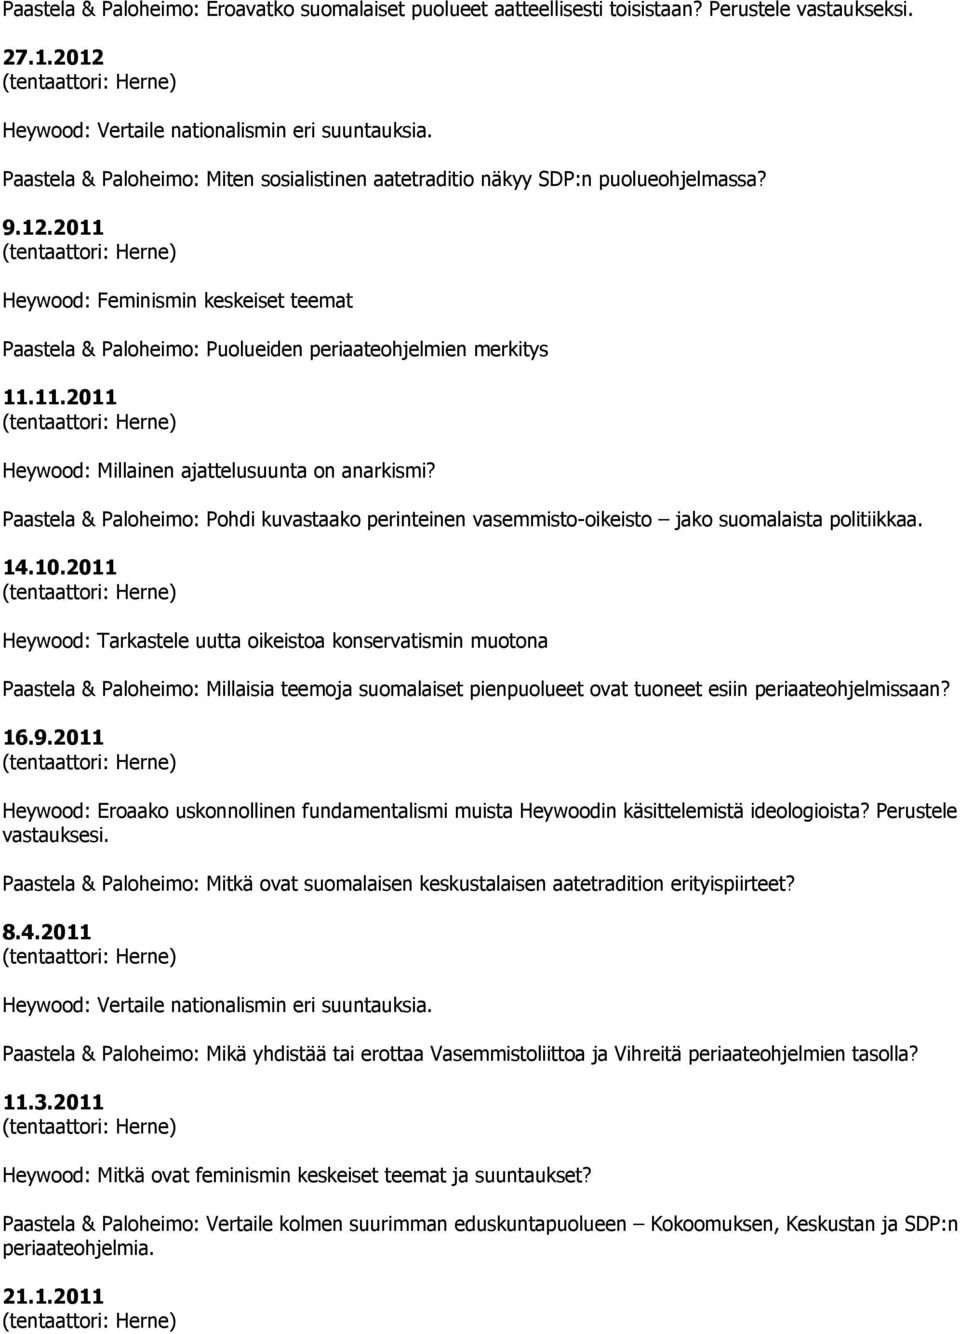 2011 Tarkastele uutta oikeistoa konservatismin muotona Millaisia teemoja suomalaiset pienpuolueet ovat tuoneet esiin periaateohjelmissaan? 16.9.